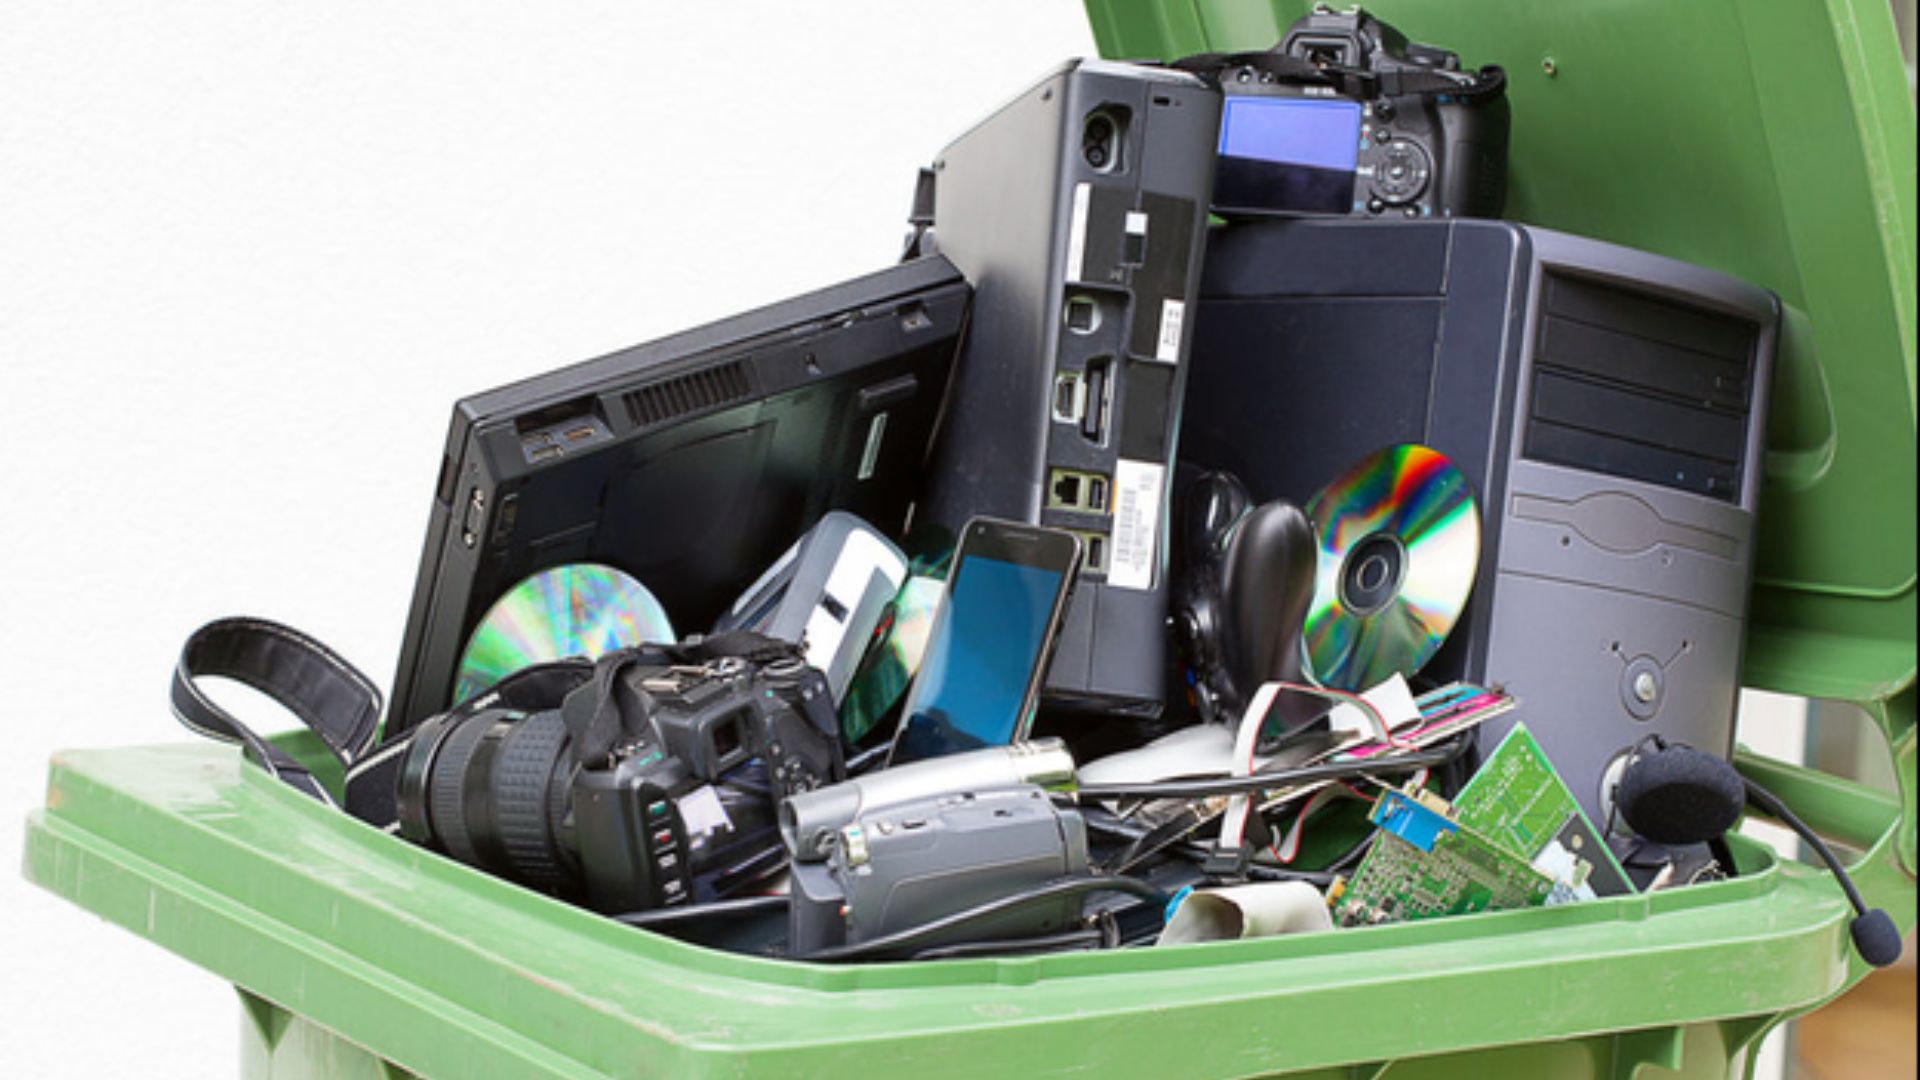 waste in a bin  proving e-waste